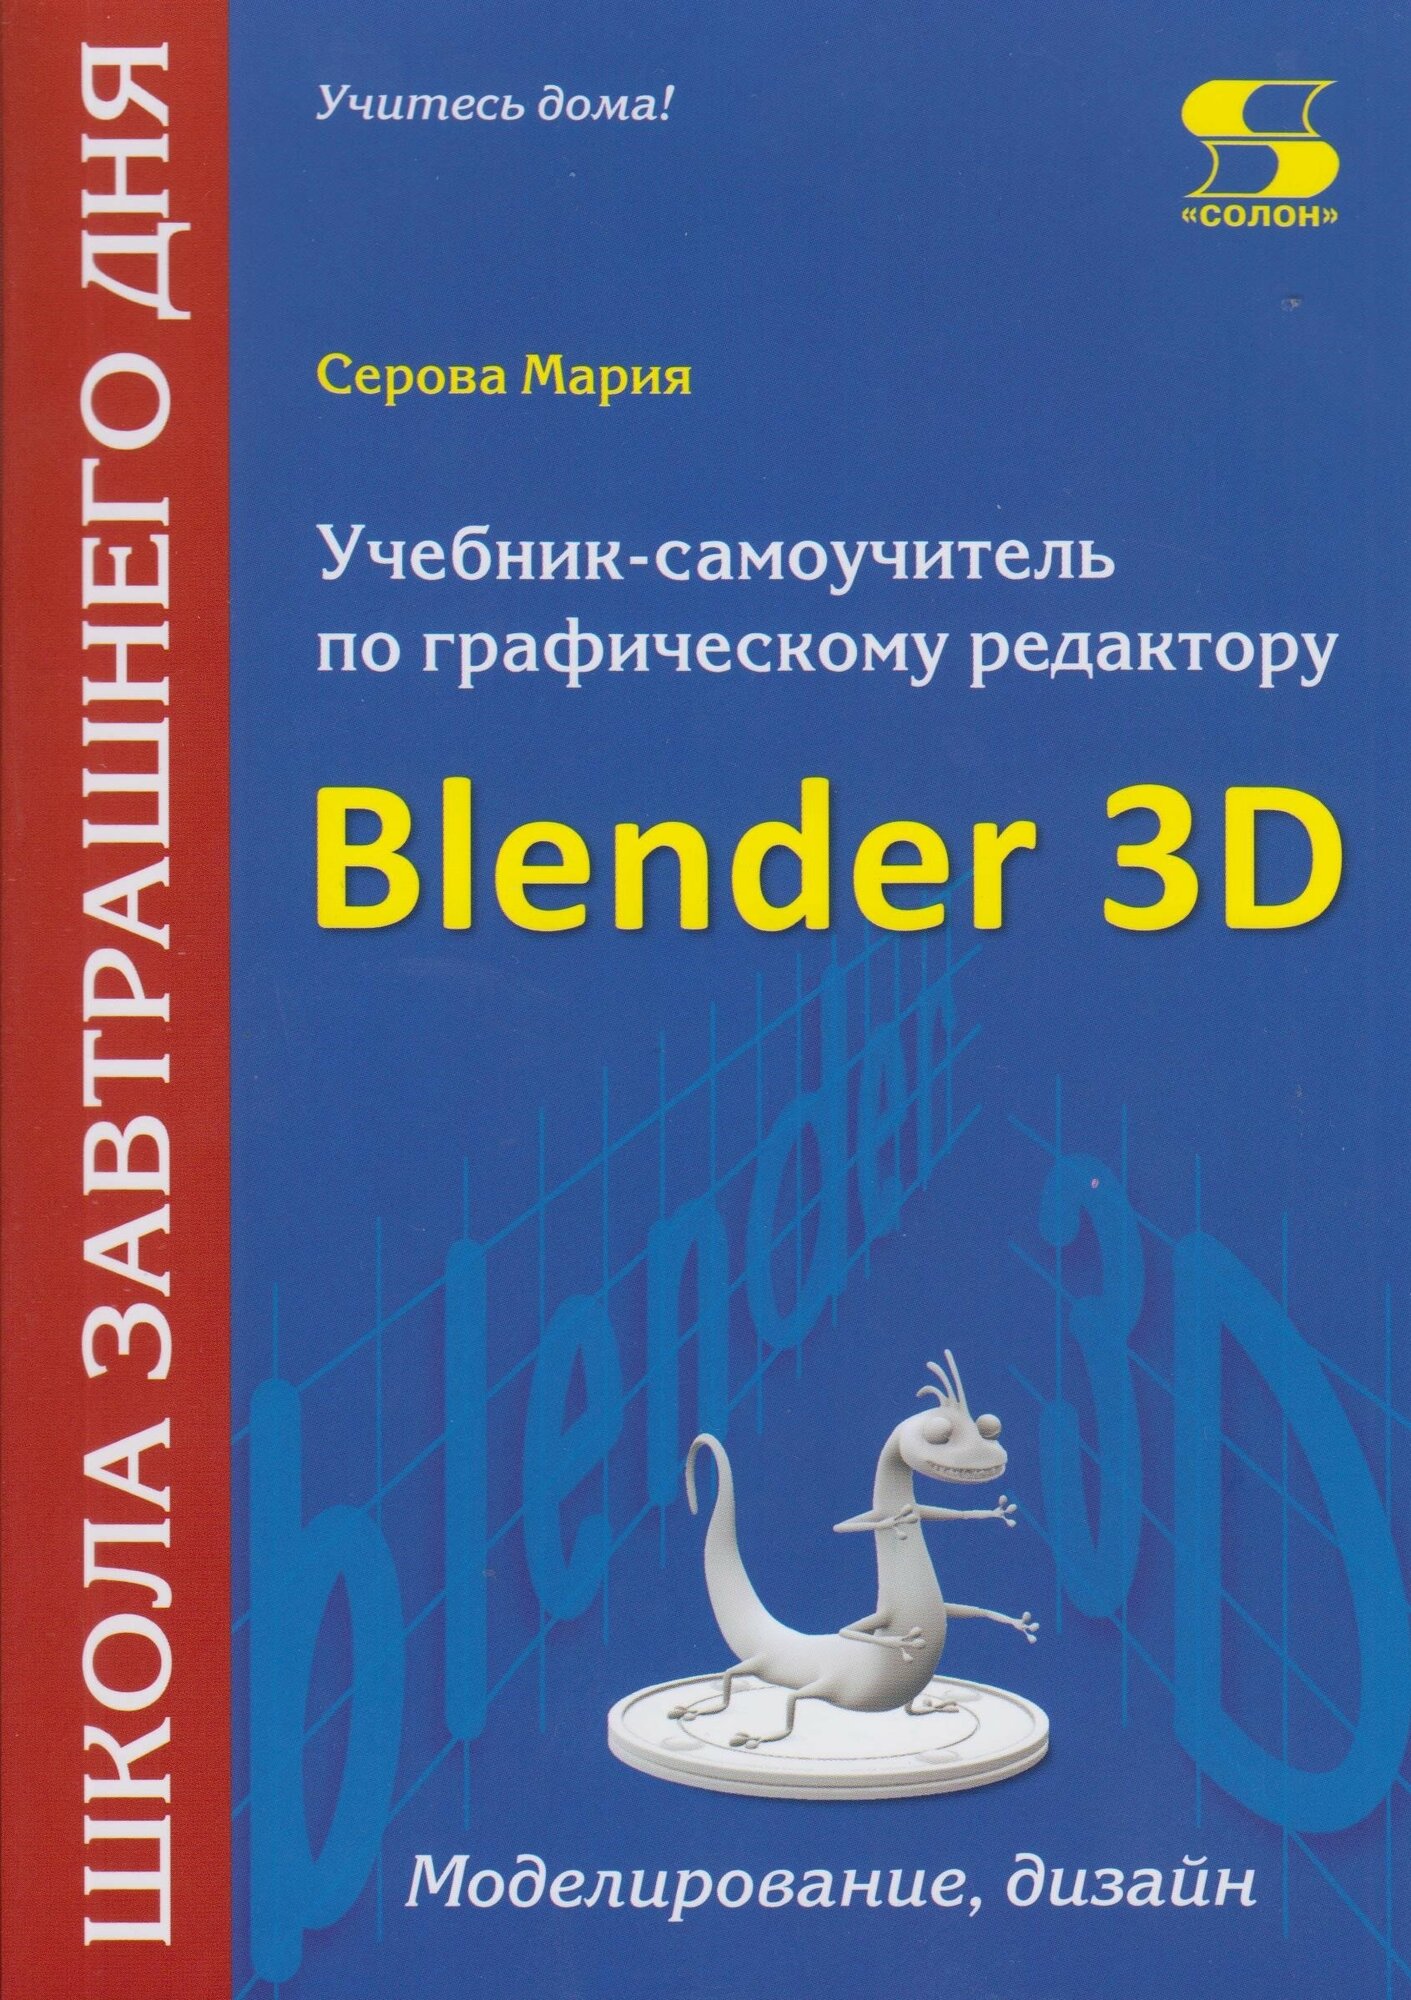 Учебник-самоучитель по графическому редактору Blender 3D. Моделирование и дизайн, Серова М.